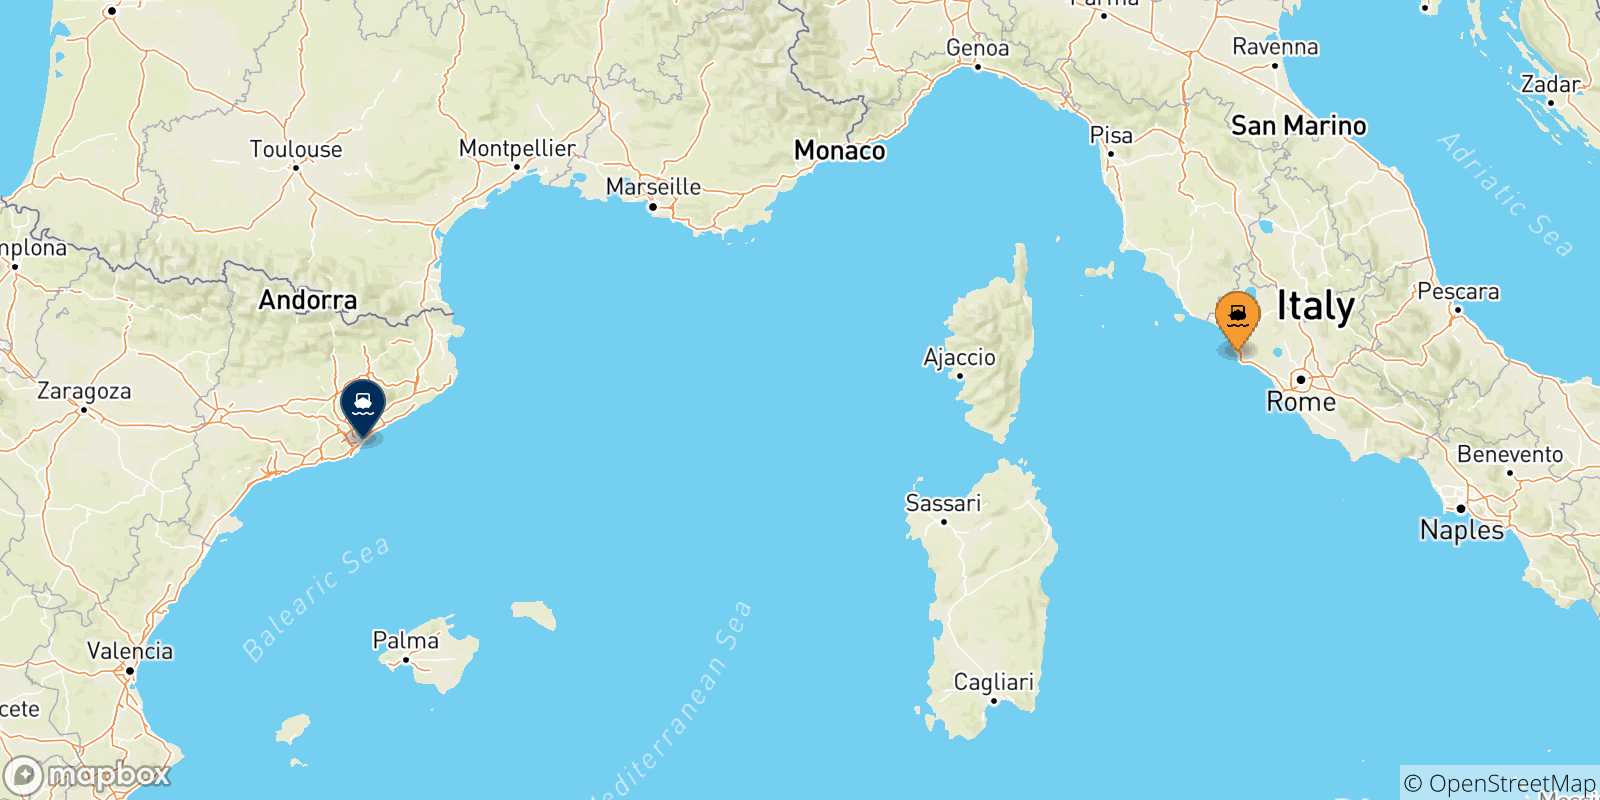 Mappa delle possibili rotte tra Civitavecchia e la Spagna